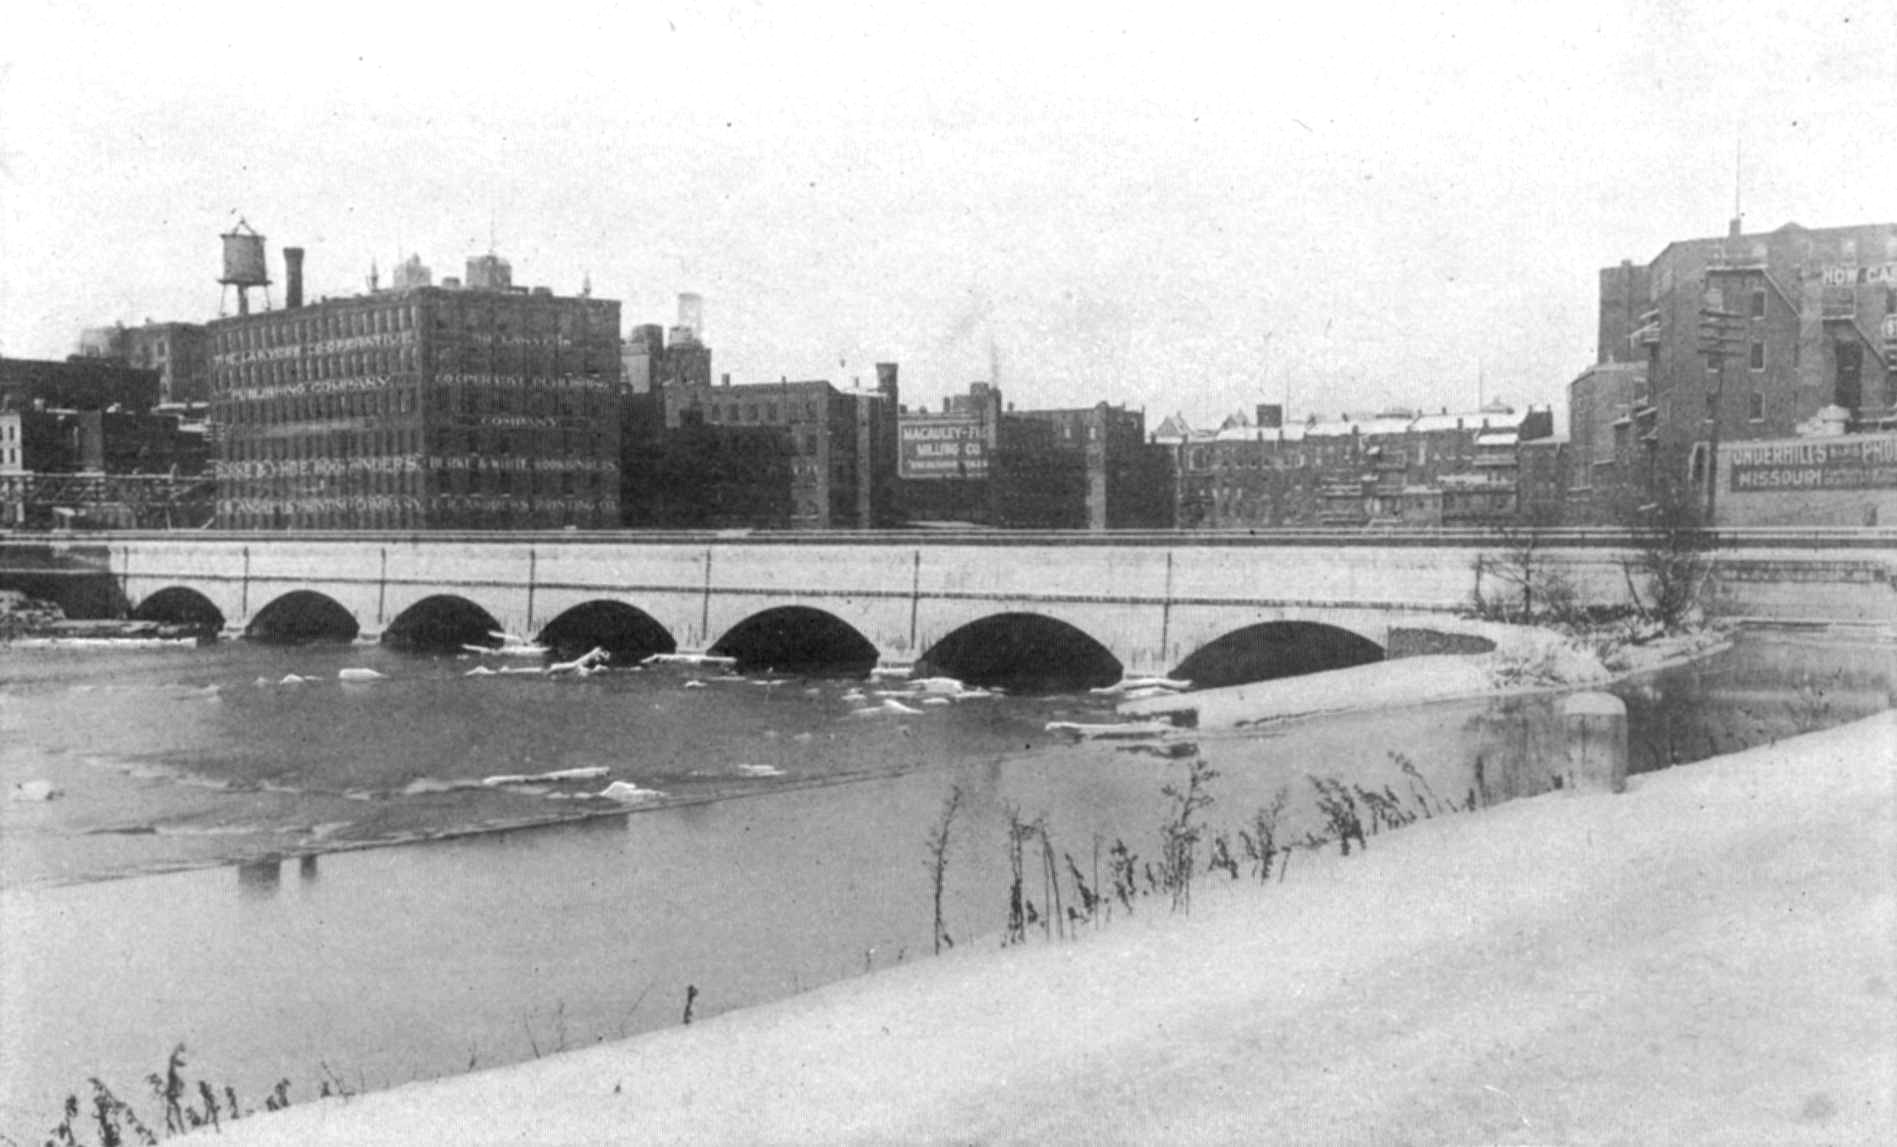 Second Genesee River Aqueduct